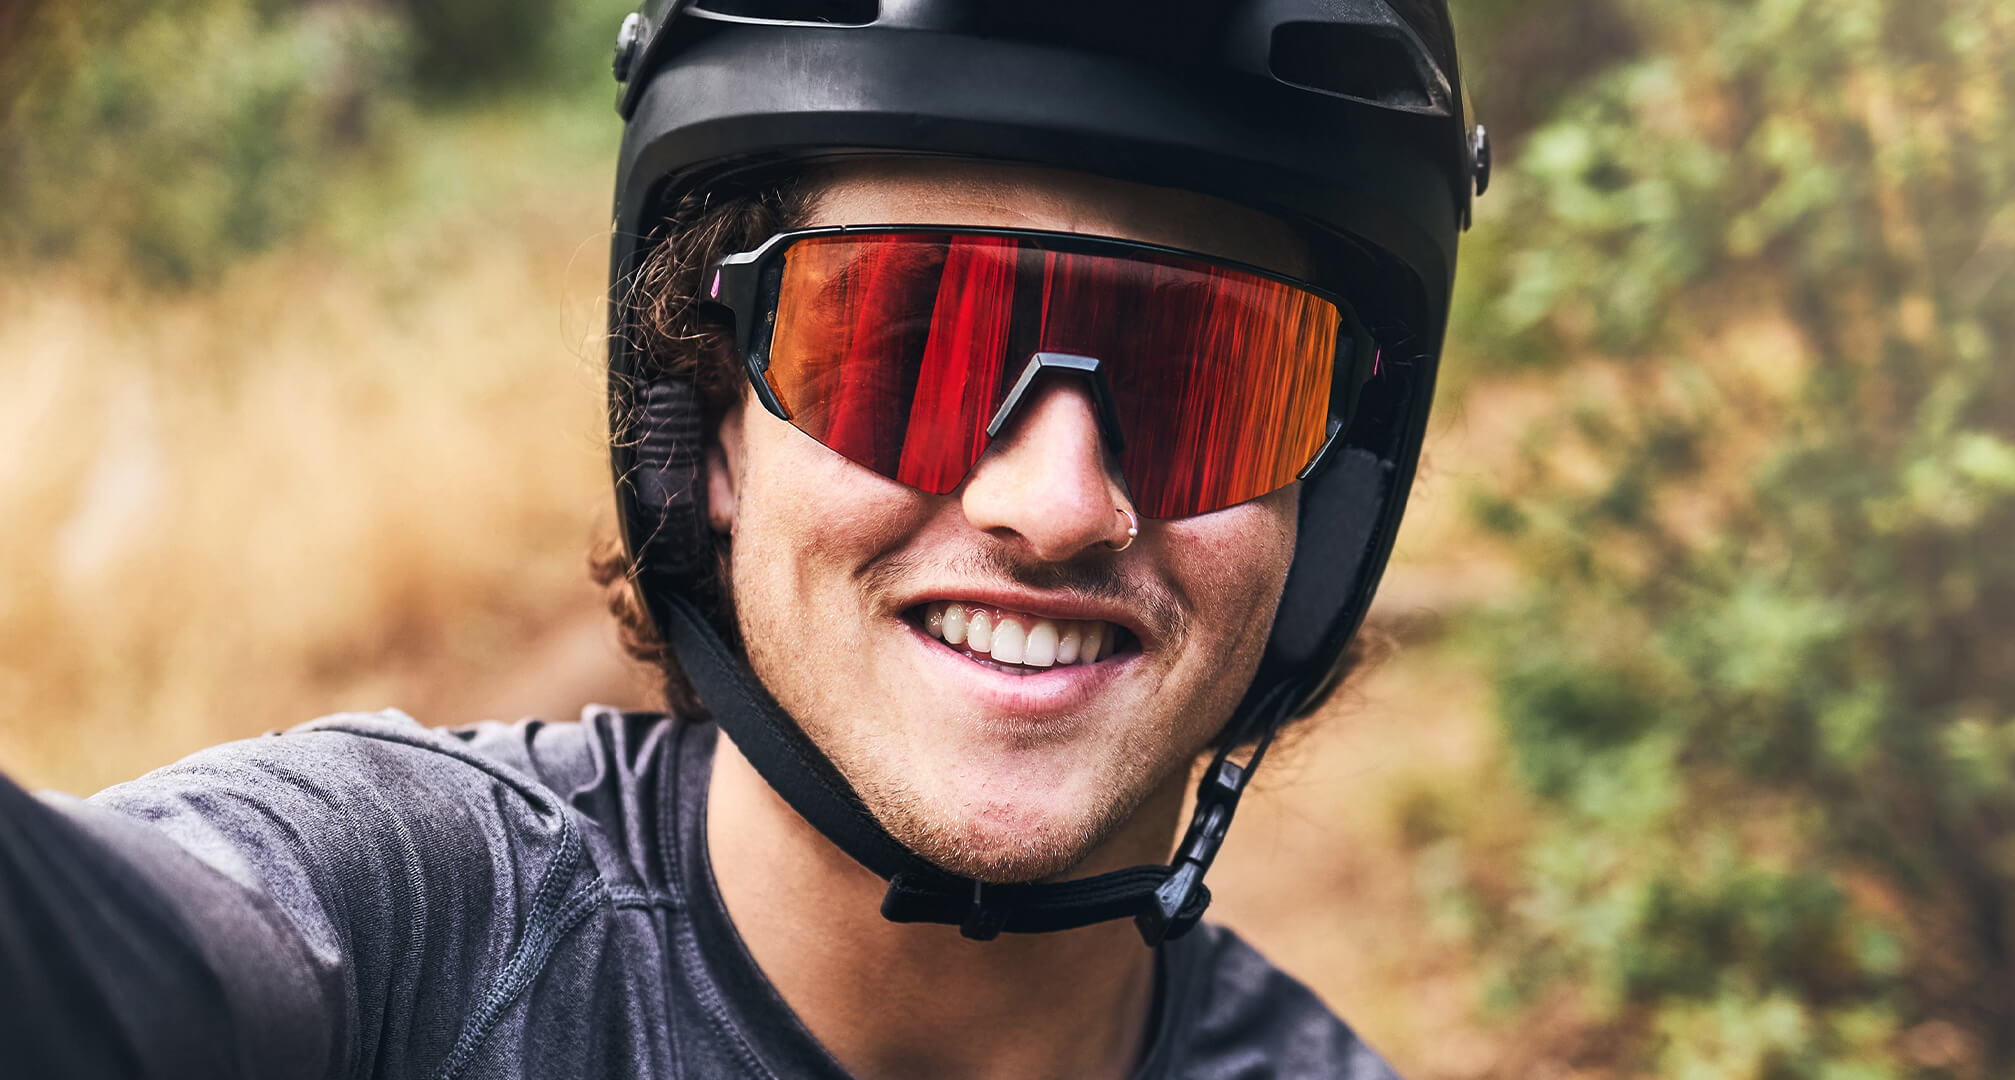 nærbillede af person med cykelhjelm og solbriller